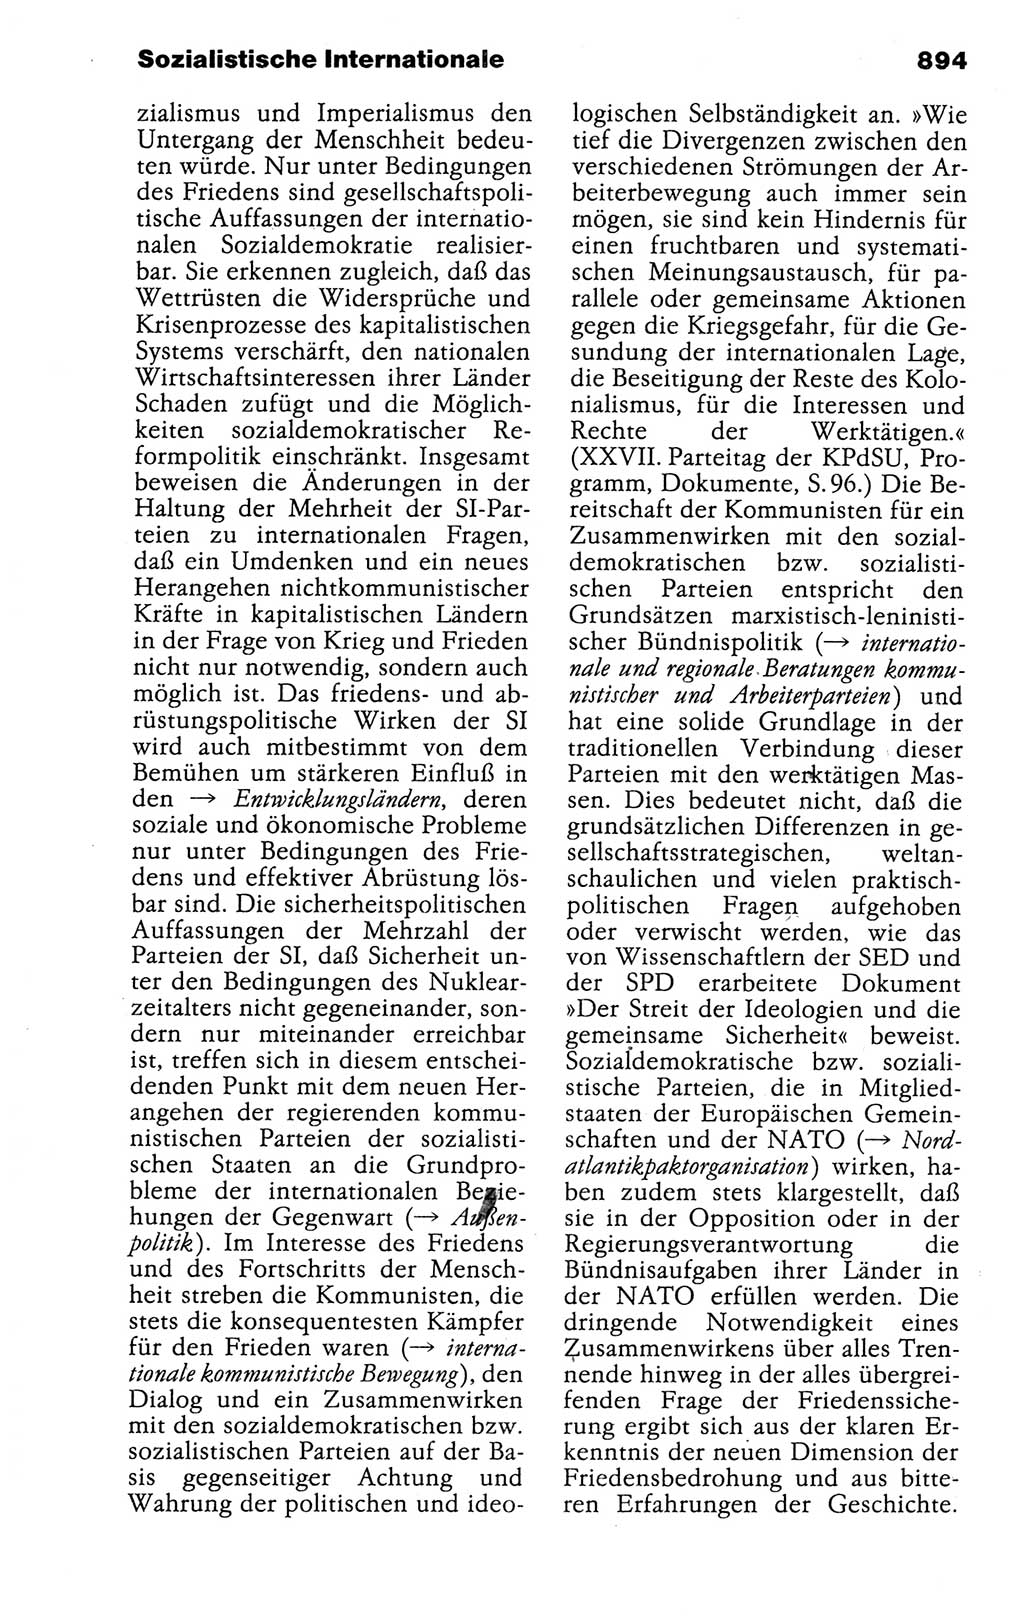 Kleines politisches Wörterbuch [Deutsche Demokratische Republik (DDR)] 1988, Seite 894 (Kl. pol. Wb. DDR 1988, S. 894)